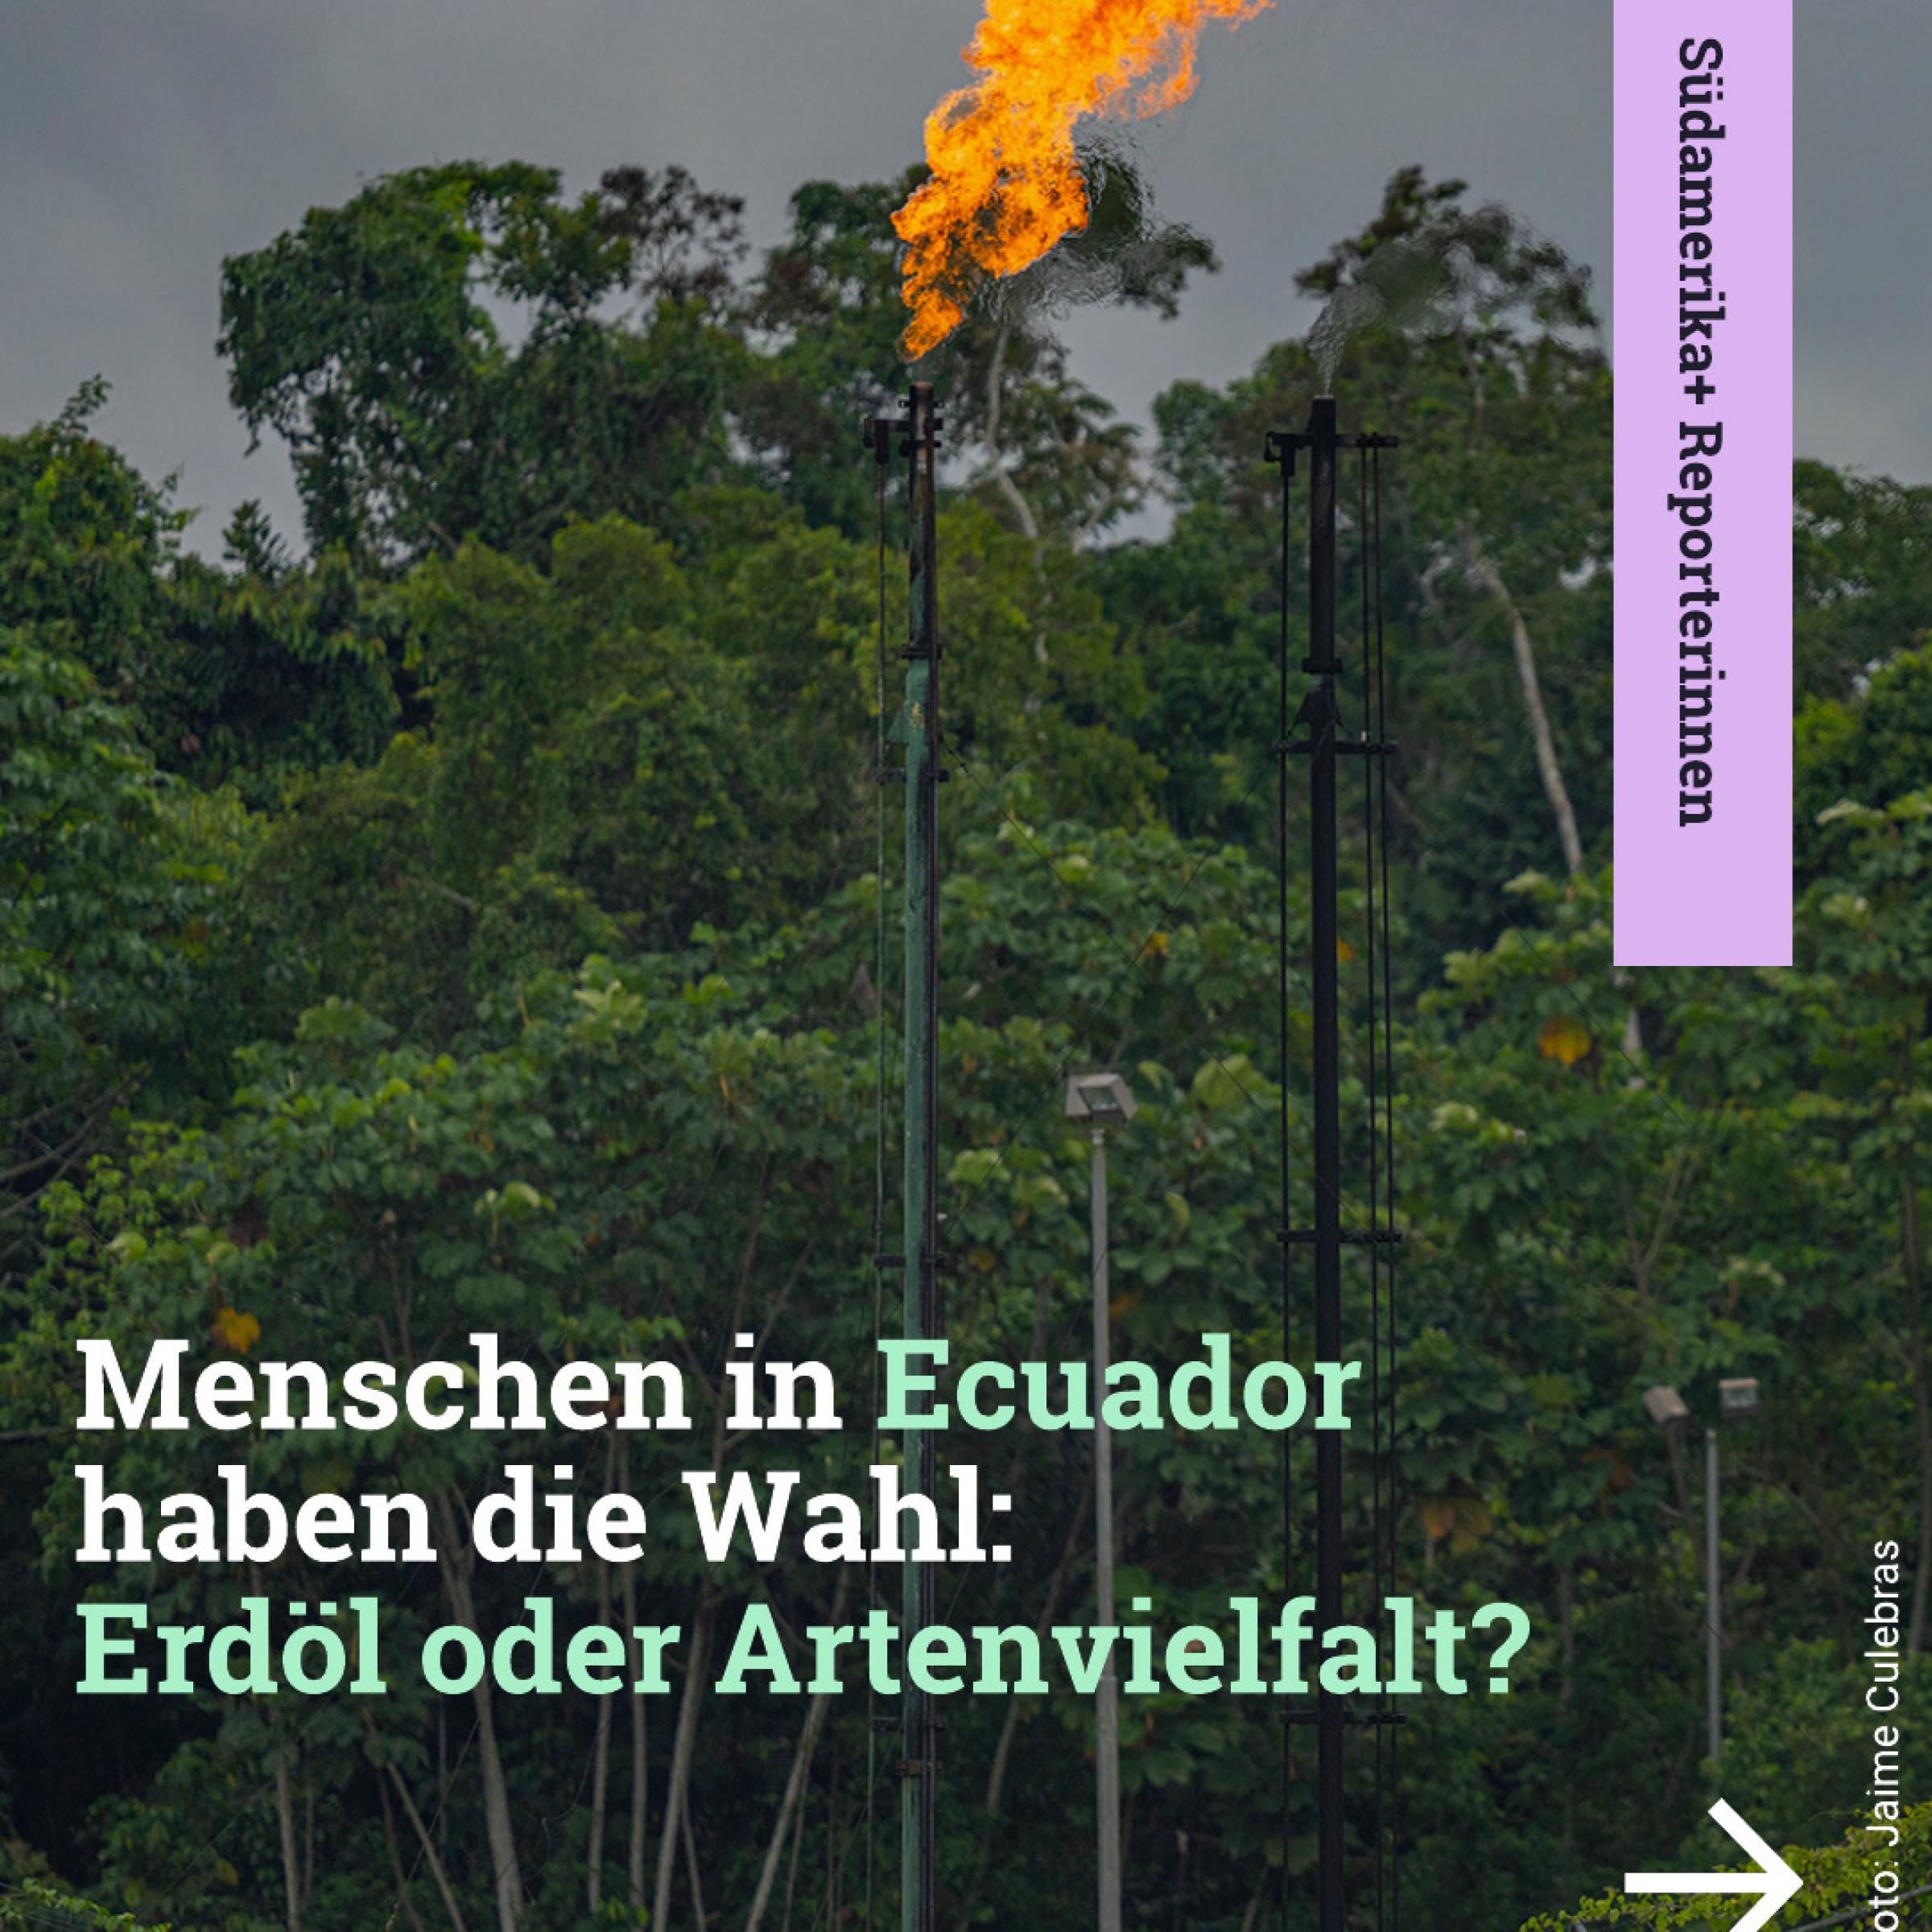 Fleming durch Ölbohrungen im Regenwald im Hintergrund; Text davor: Menschen in Ecuador haben die Wahl: Erdöl oder Artenvielfalt?